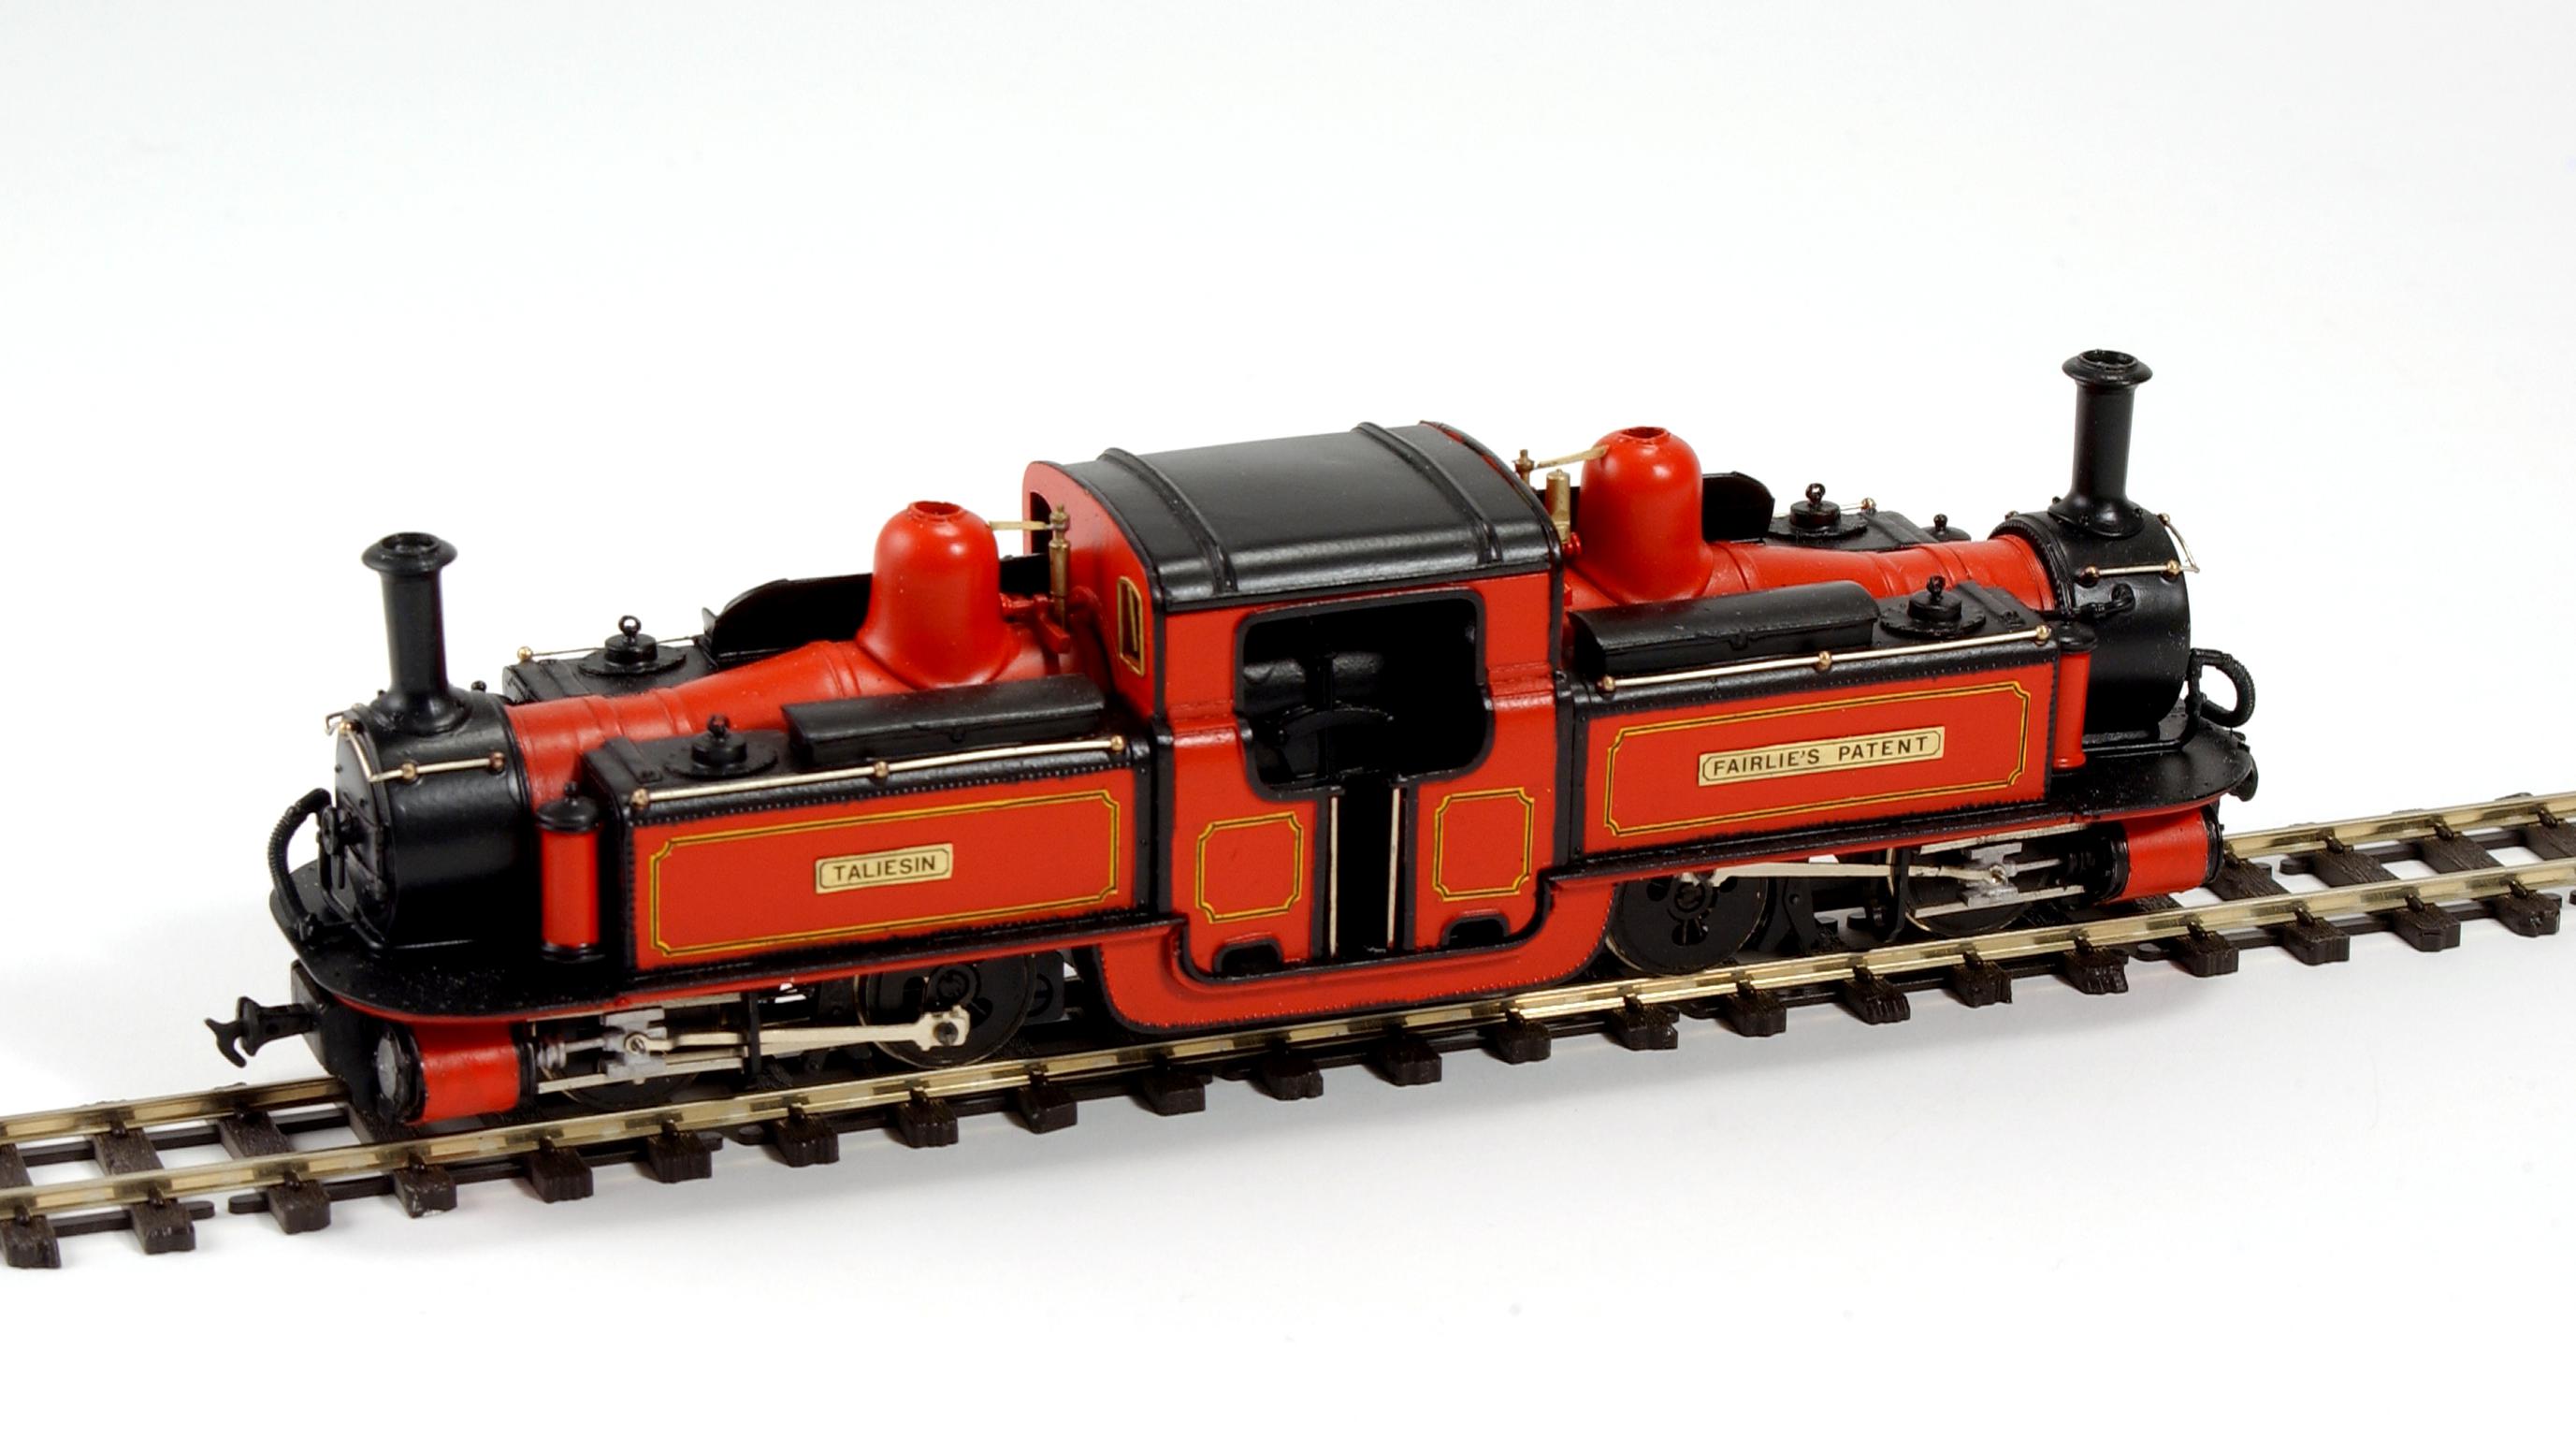 Ffestiniog Railway locomotive model